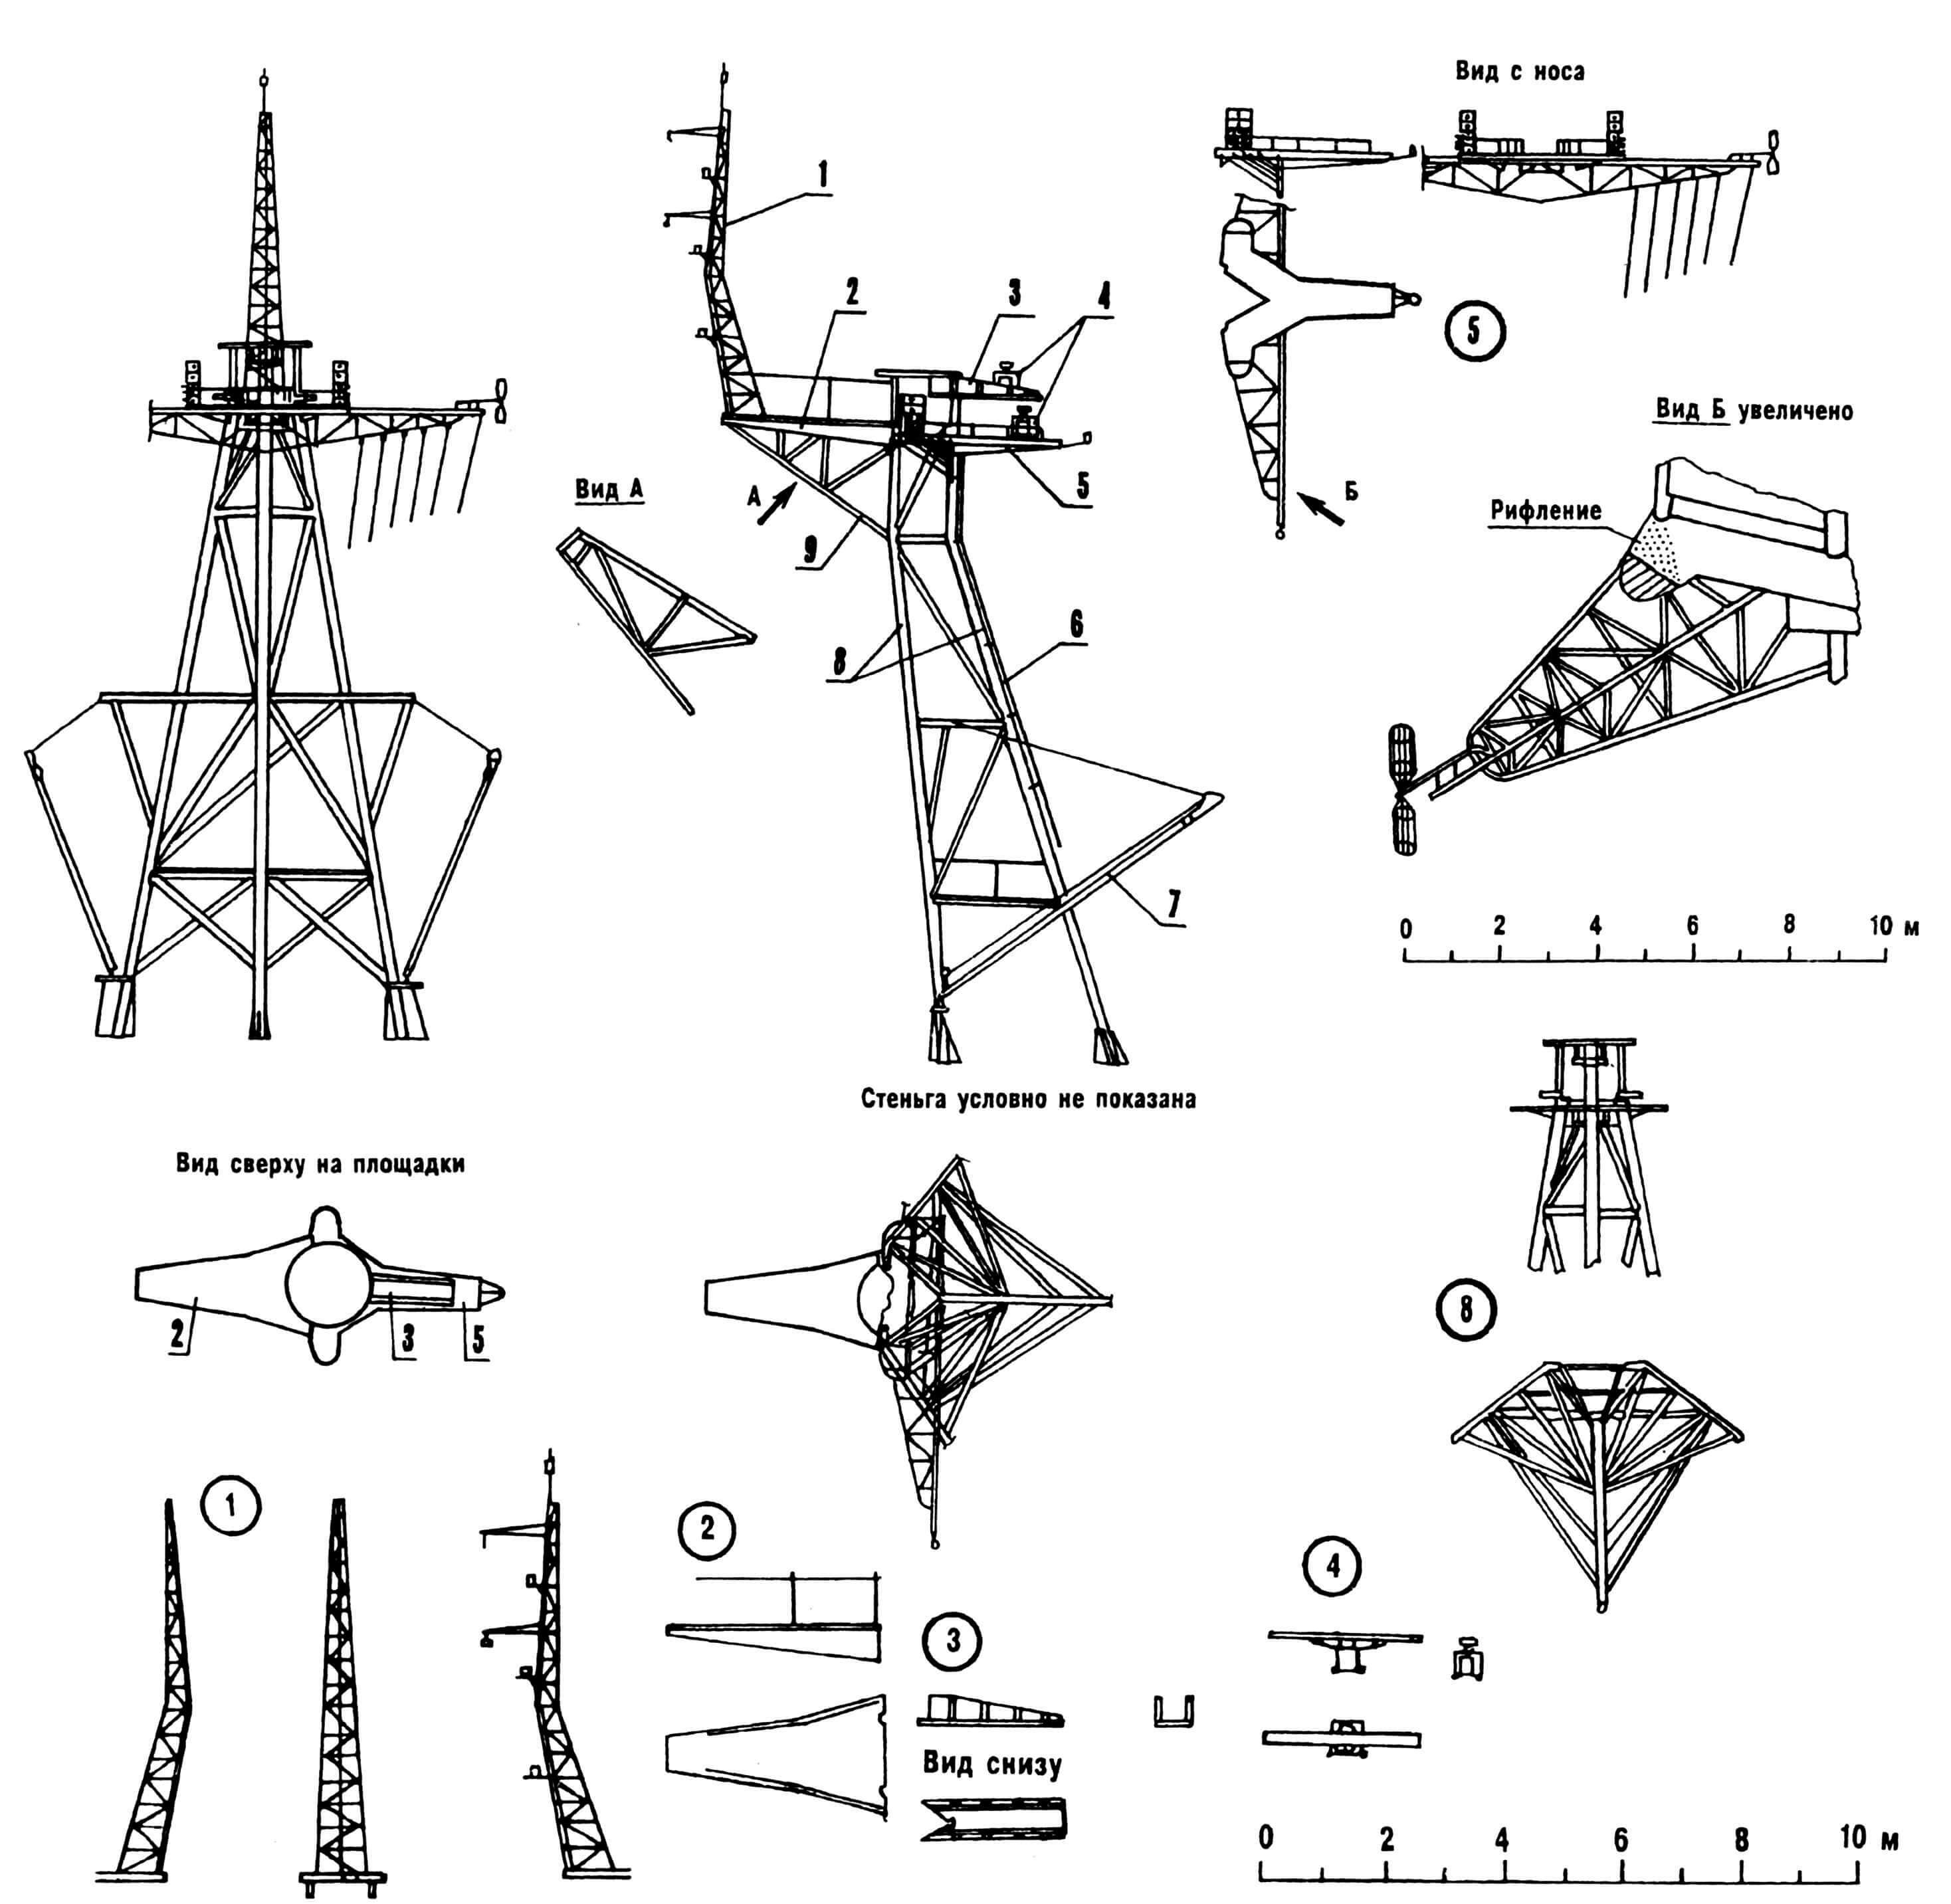 Фок-мачта: 1 — стеньга; 2 — площадка; 3,5 — площадки навигационных РЛС; 4 — навигационные РЛС; 6 — трап; 7 — стрела грузовая; 8 — опоры («ноги») мачты; 9 — усиление площадки.